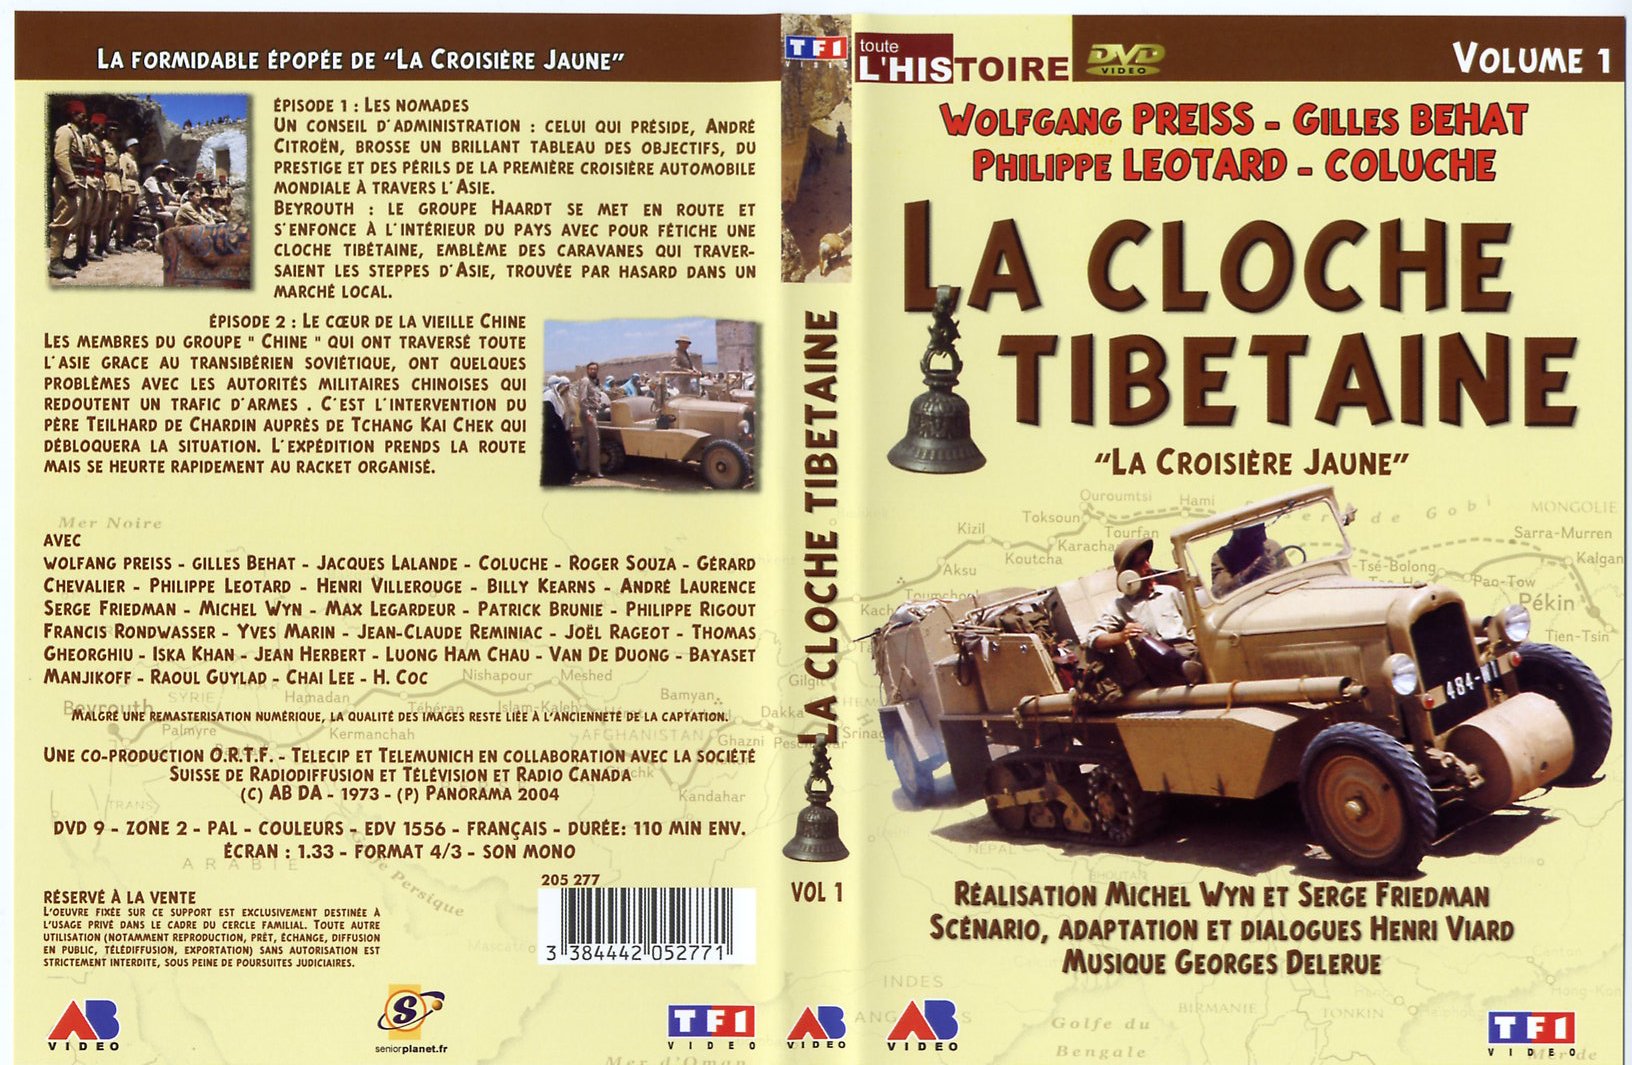 Jaquette DVD La cloche tibetaine vol 1